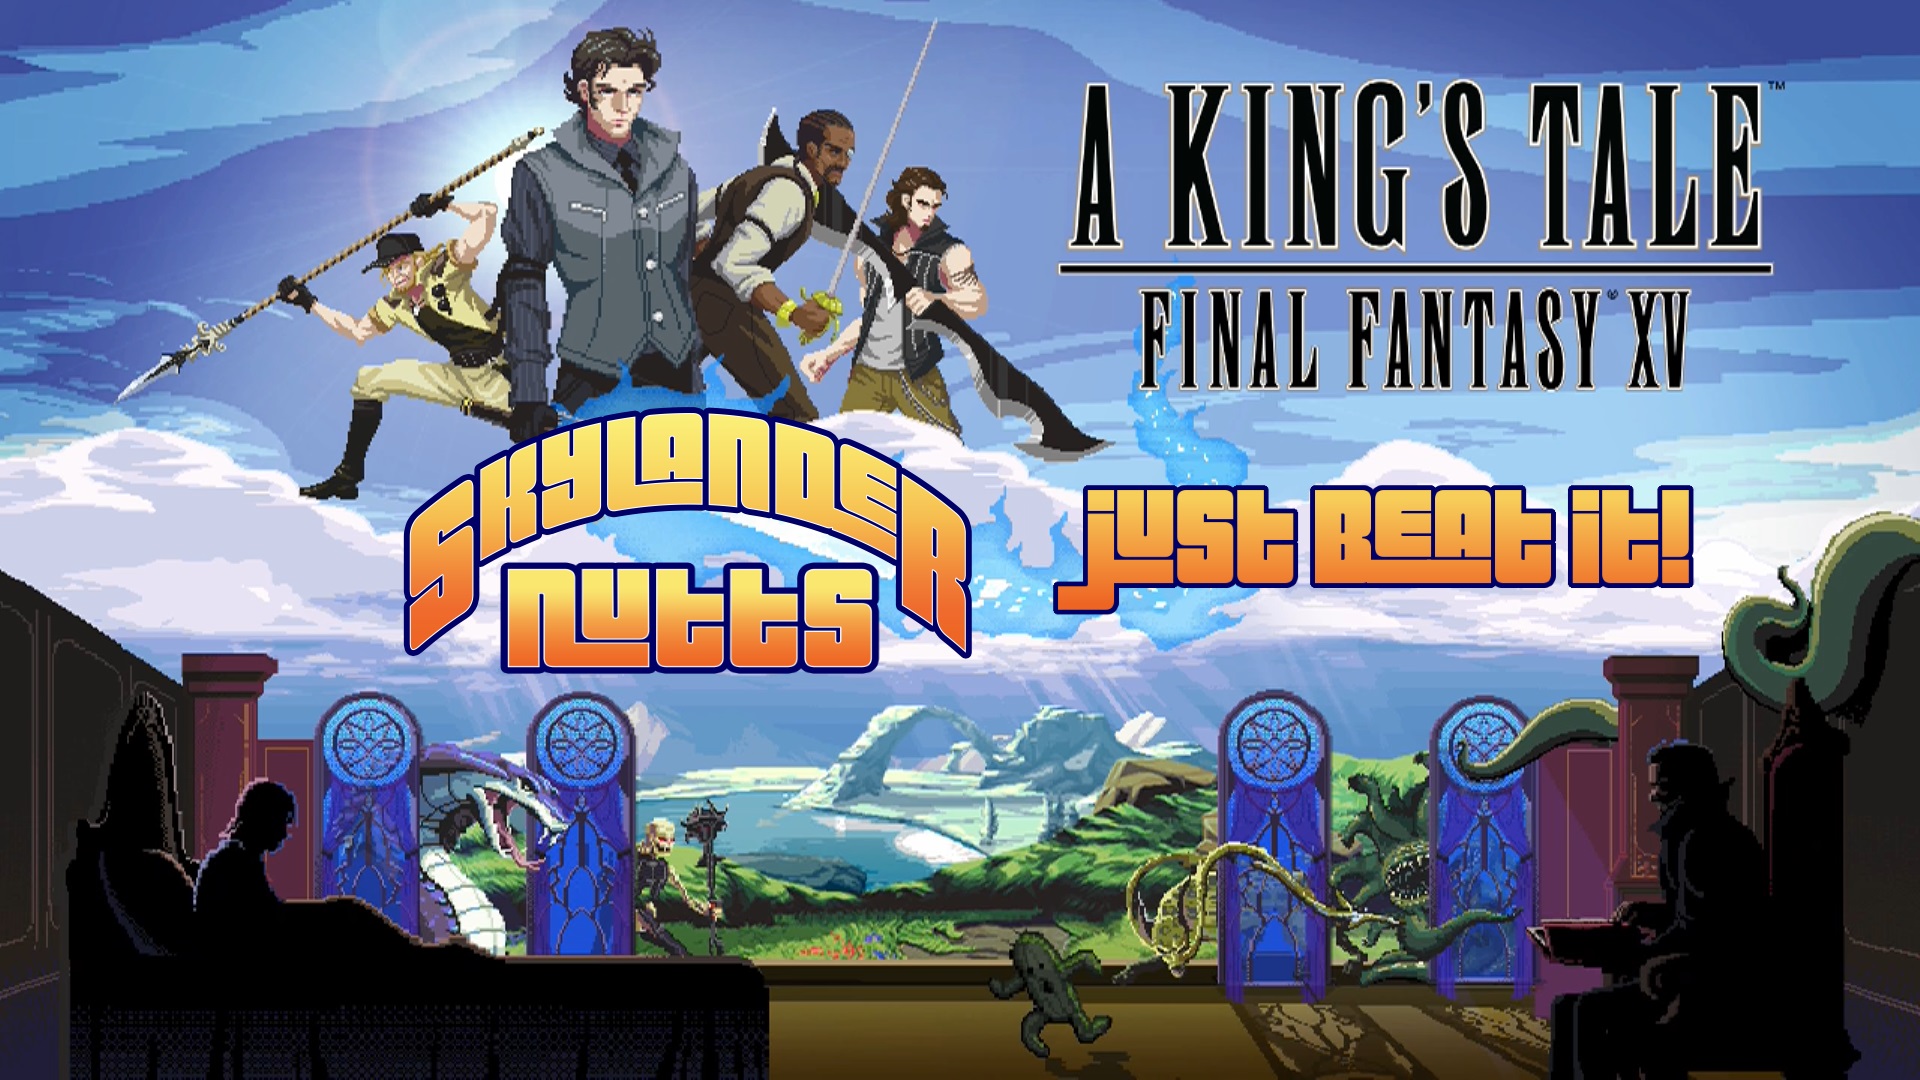 Just Beat It - A Kings Tale Final Fantasy XV